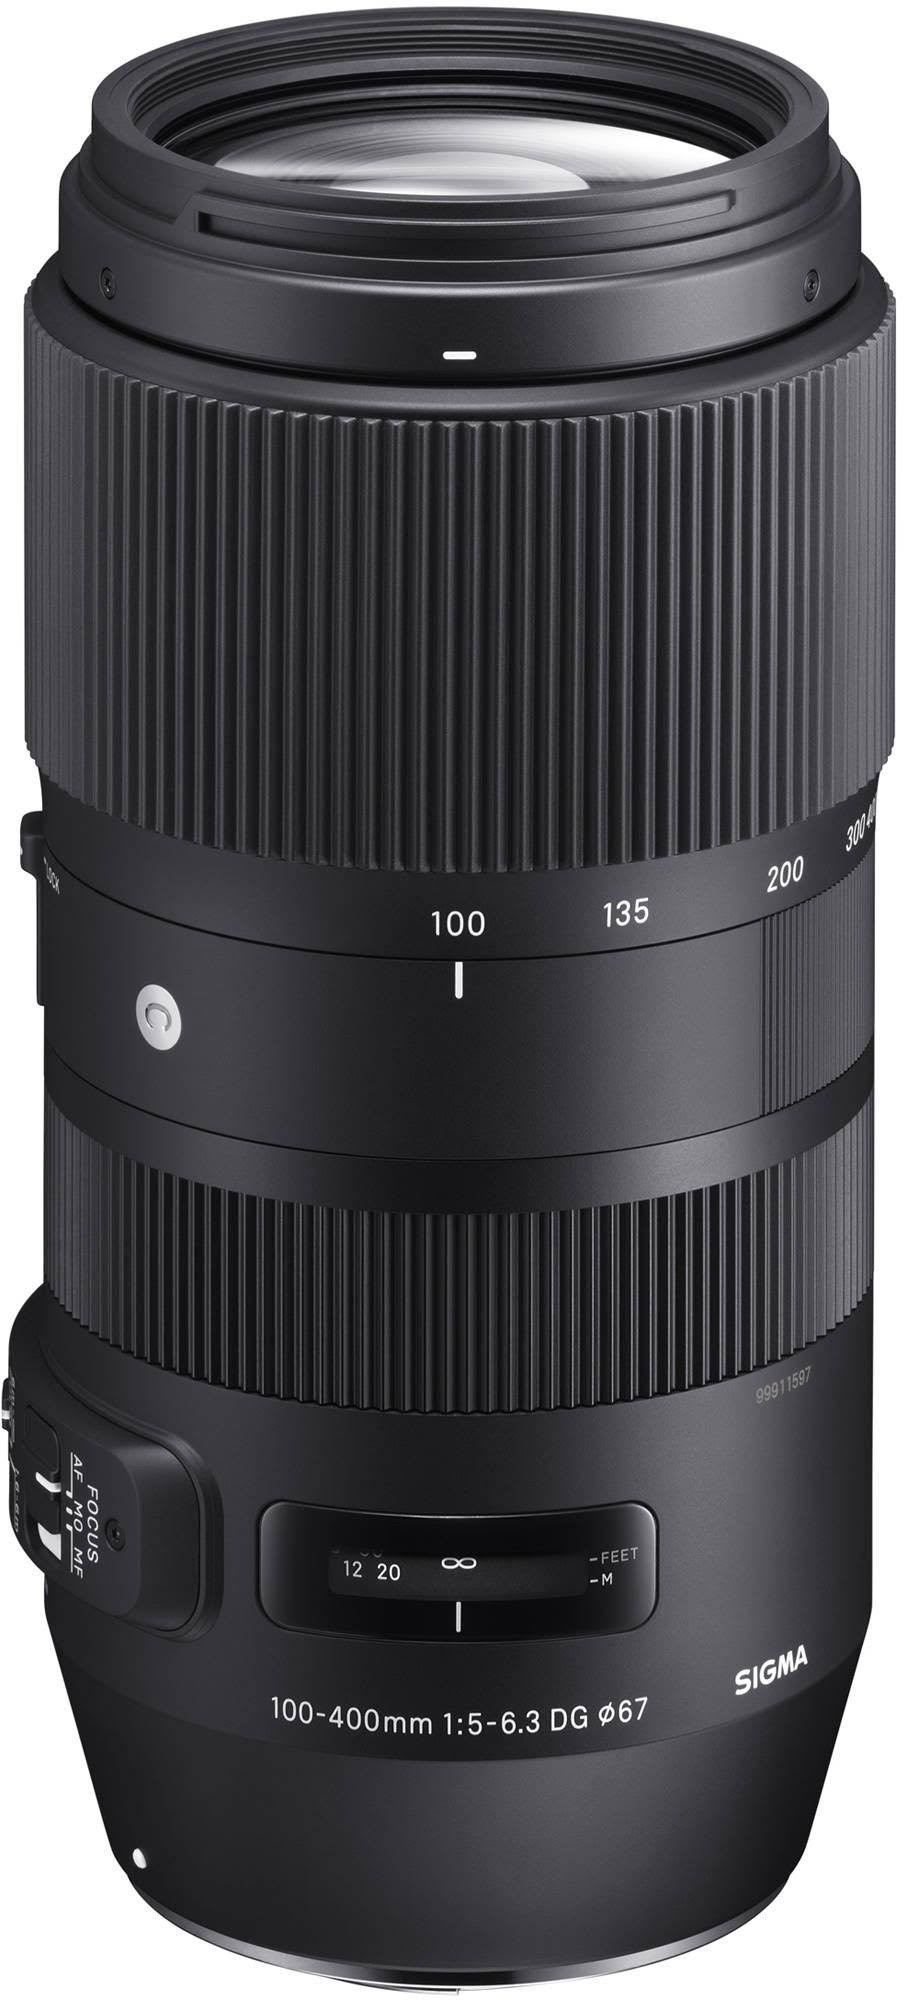 SIGMA 100-400mm f / 5-6.3 DG OS HSM Contemporary Lens for Nikon F